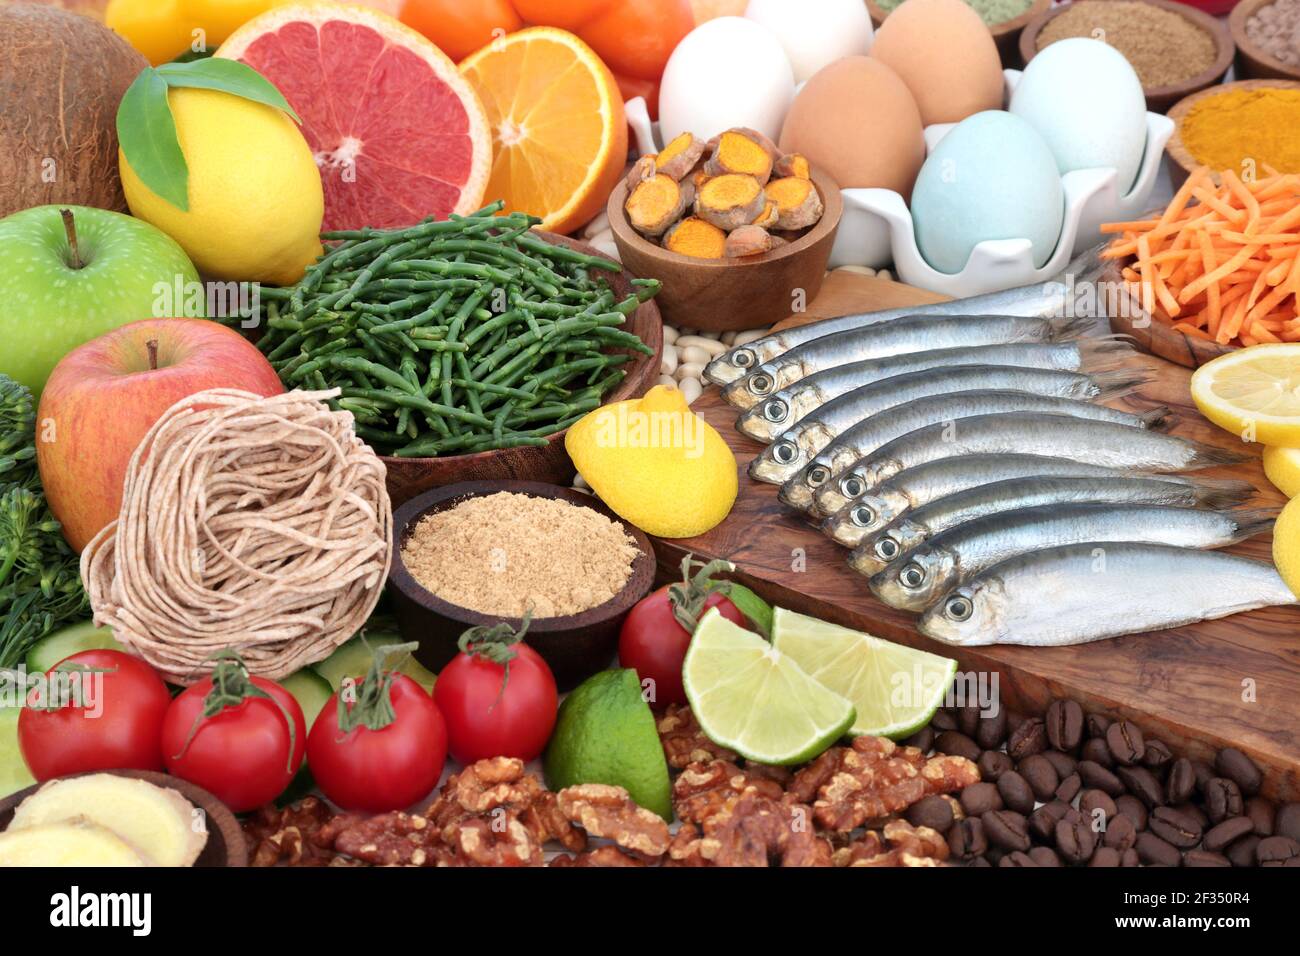 Gesunde Lebensmittel für Konzept mit super Essen von Sardinen, crevettes,  Obst, Gemüse, Kräutern und Gewürzen. Nahrungsmittel im anhocyanins und  Antioxidantien Stockfotografie - Alamy